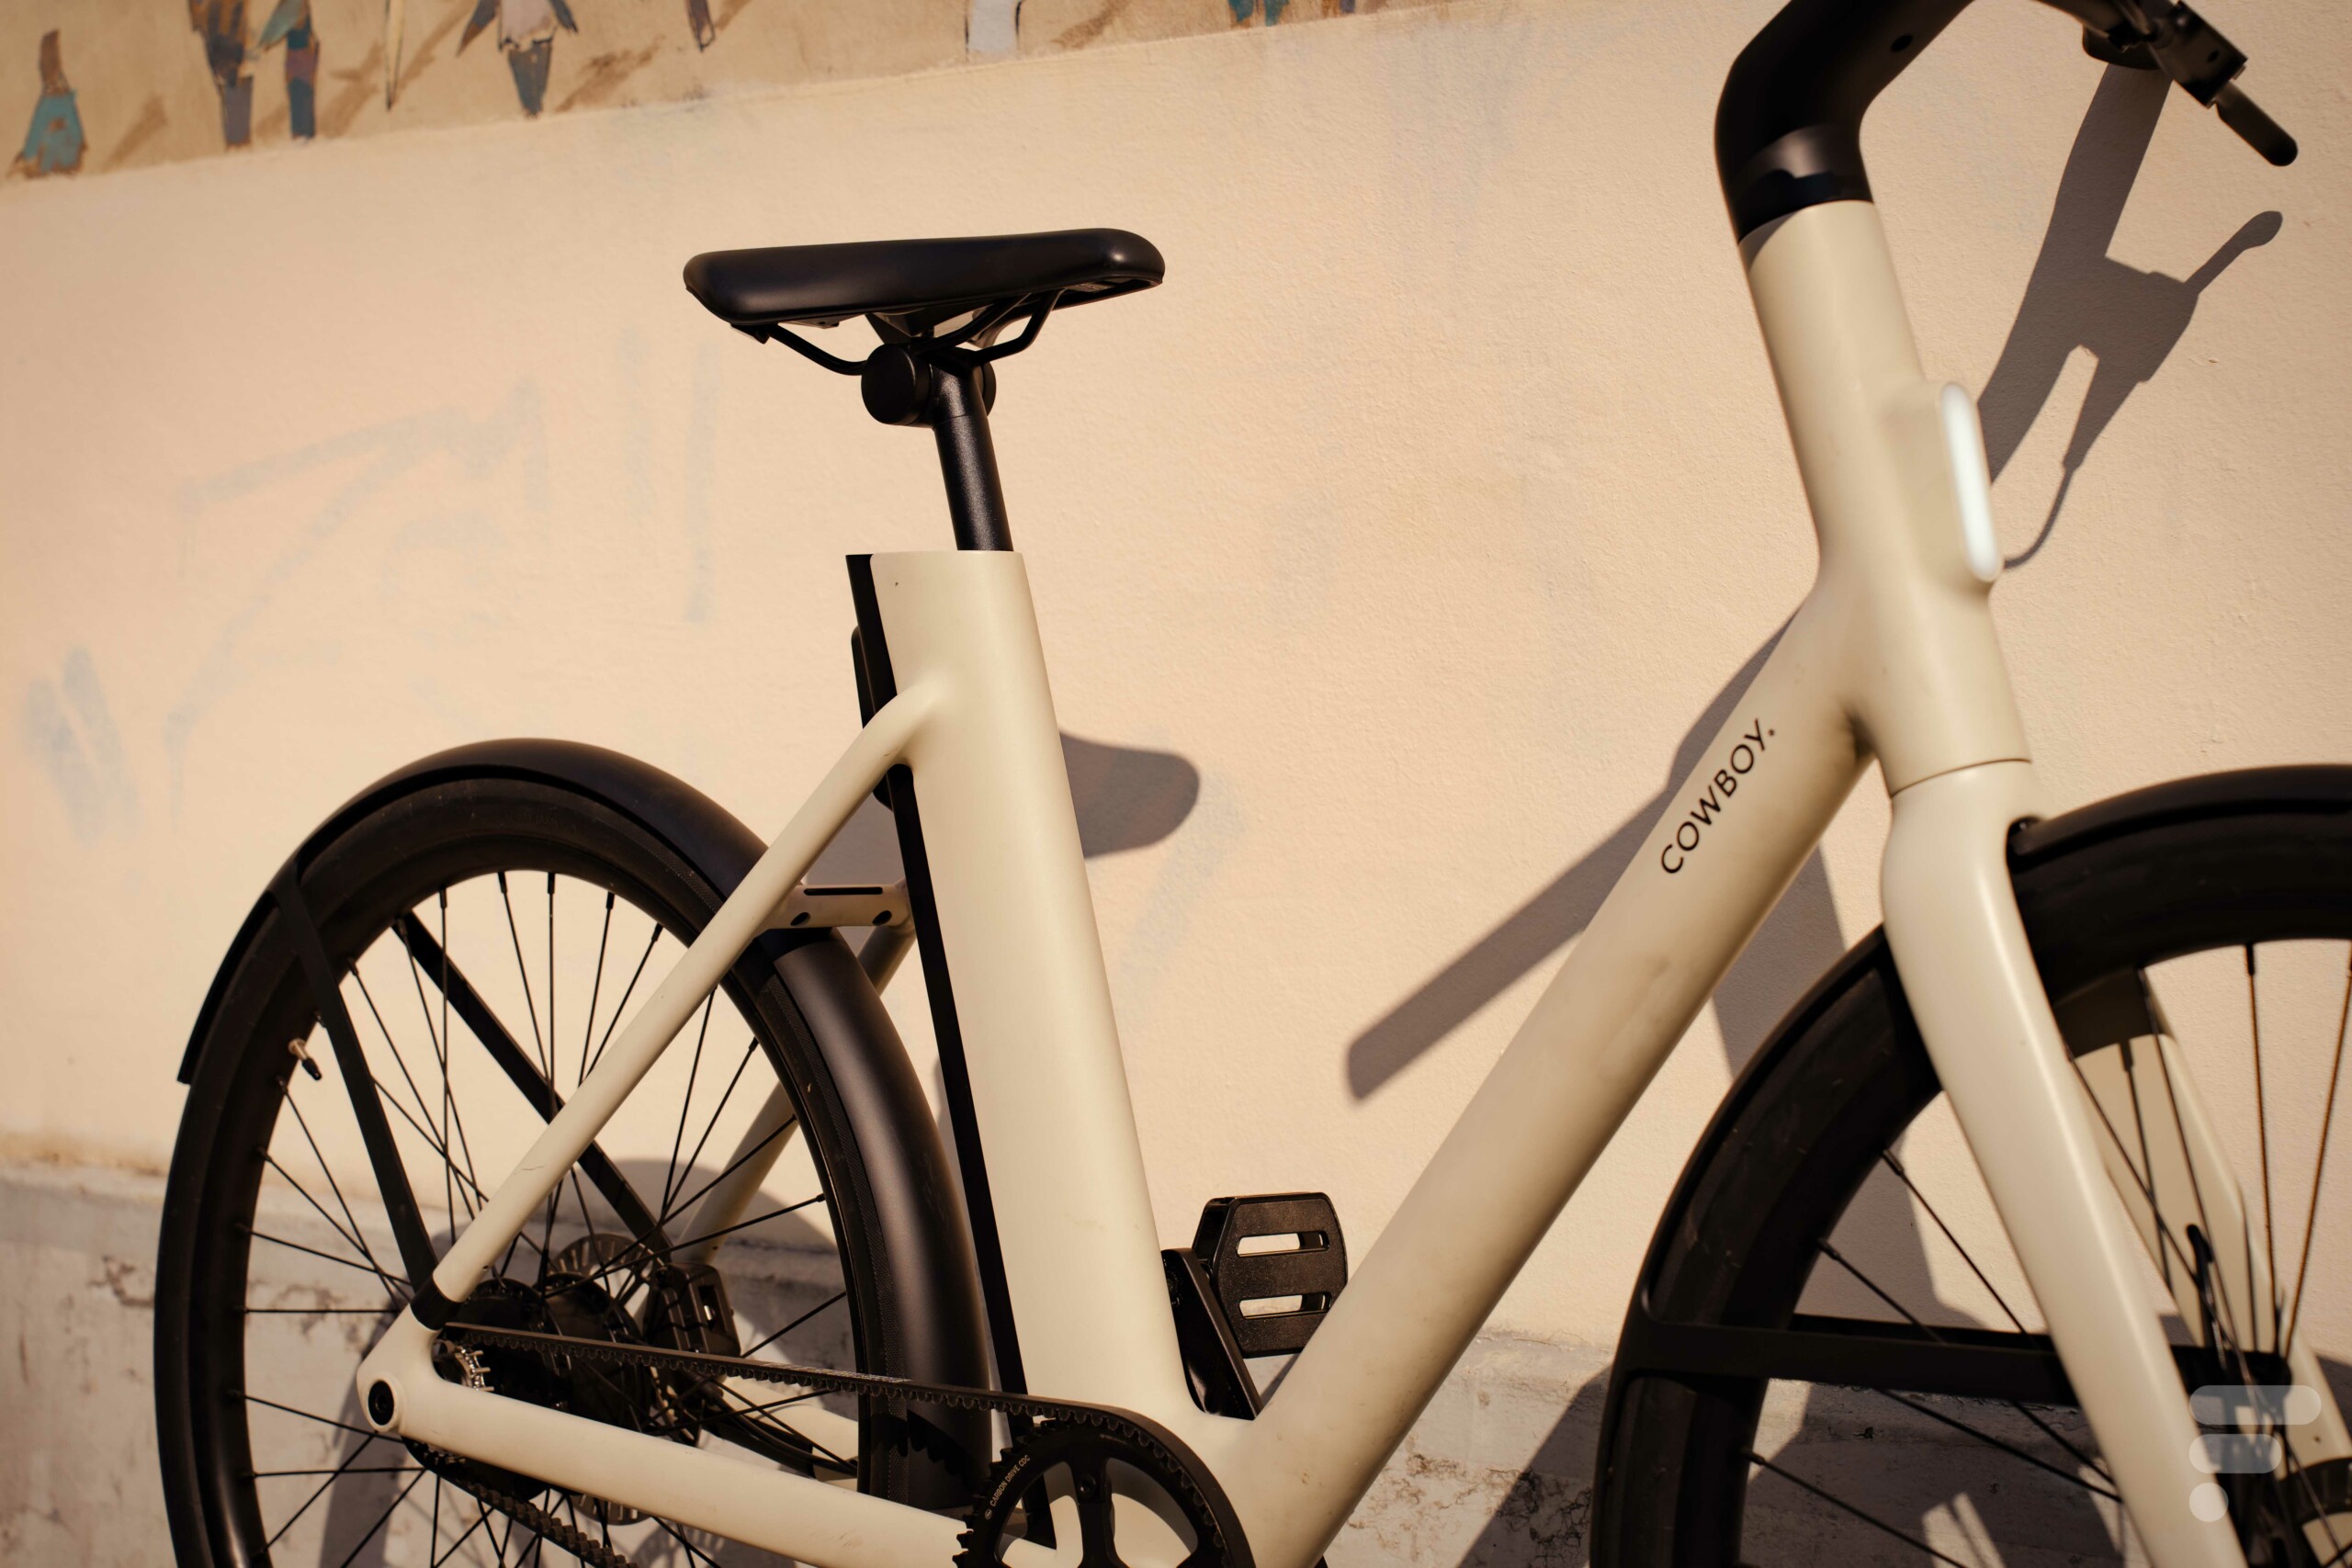 Aide à l'achat d'un vélo électrique en Île-de France : comment